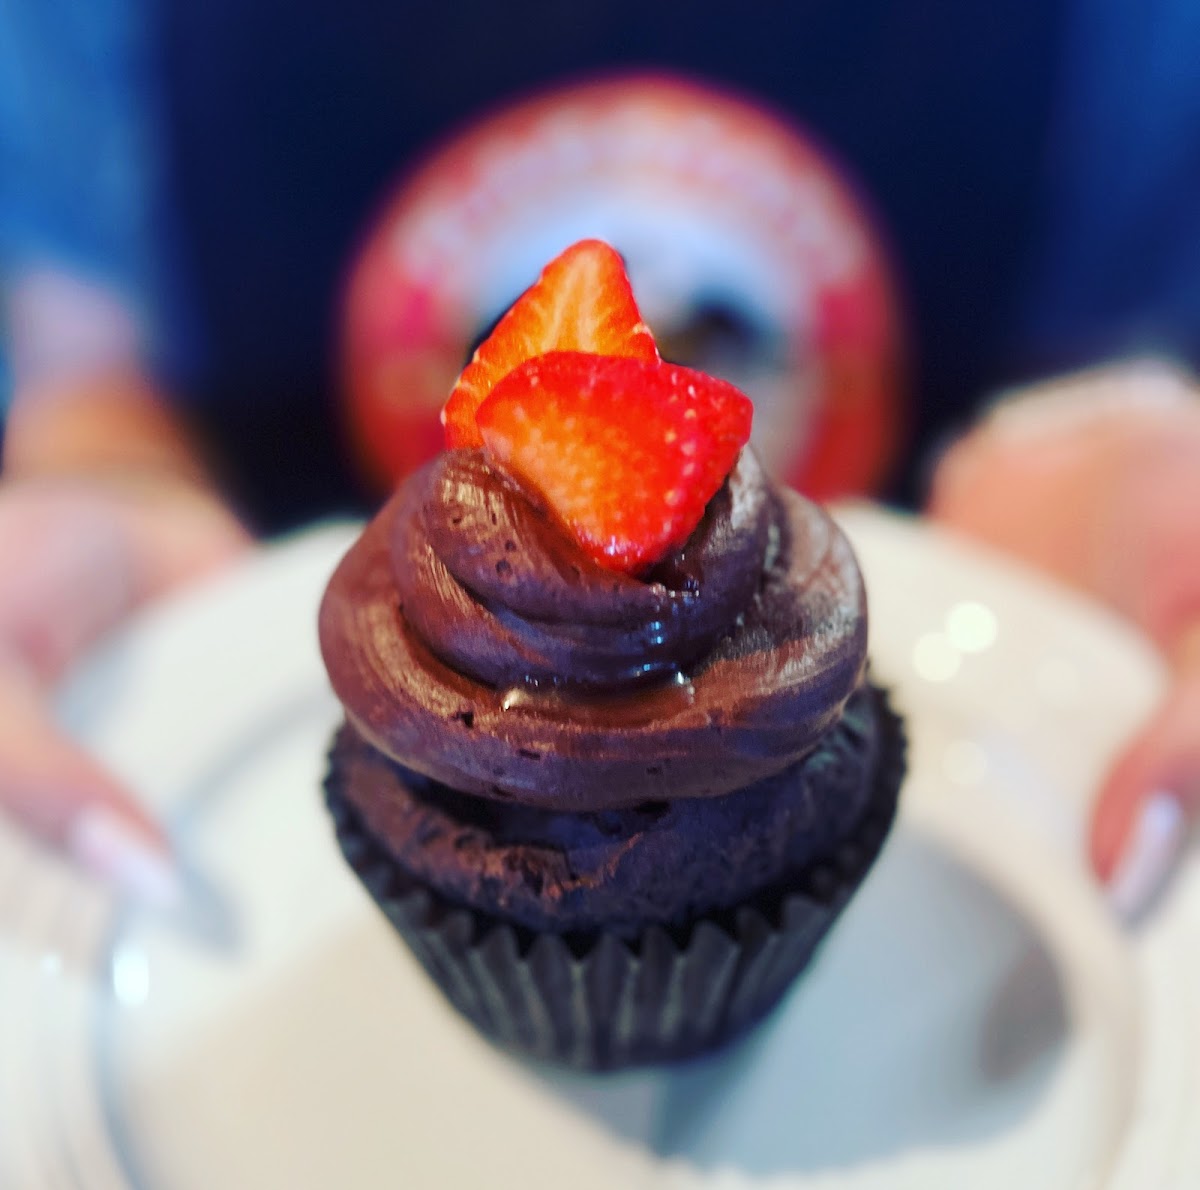 Gluten-free double chocolate cupcake yum!